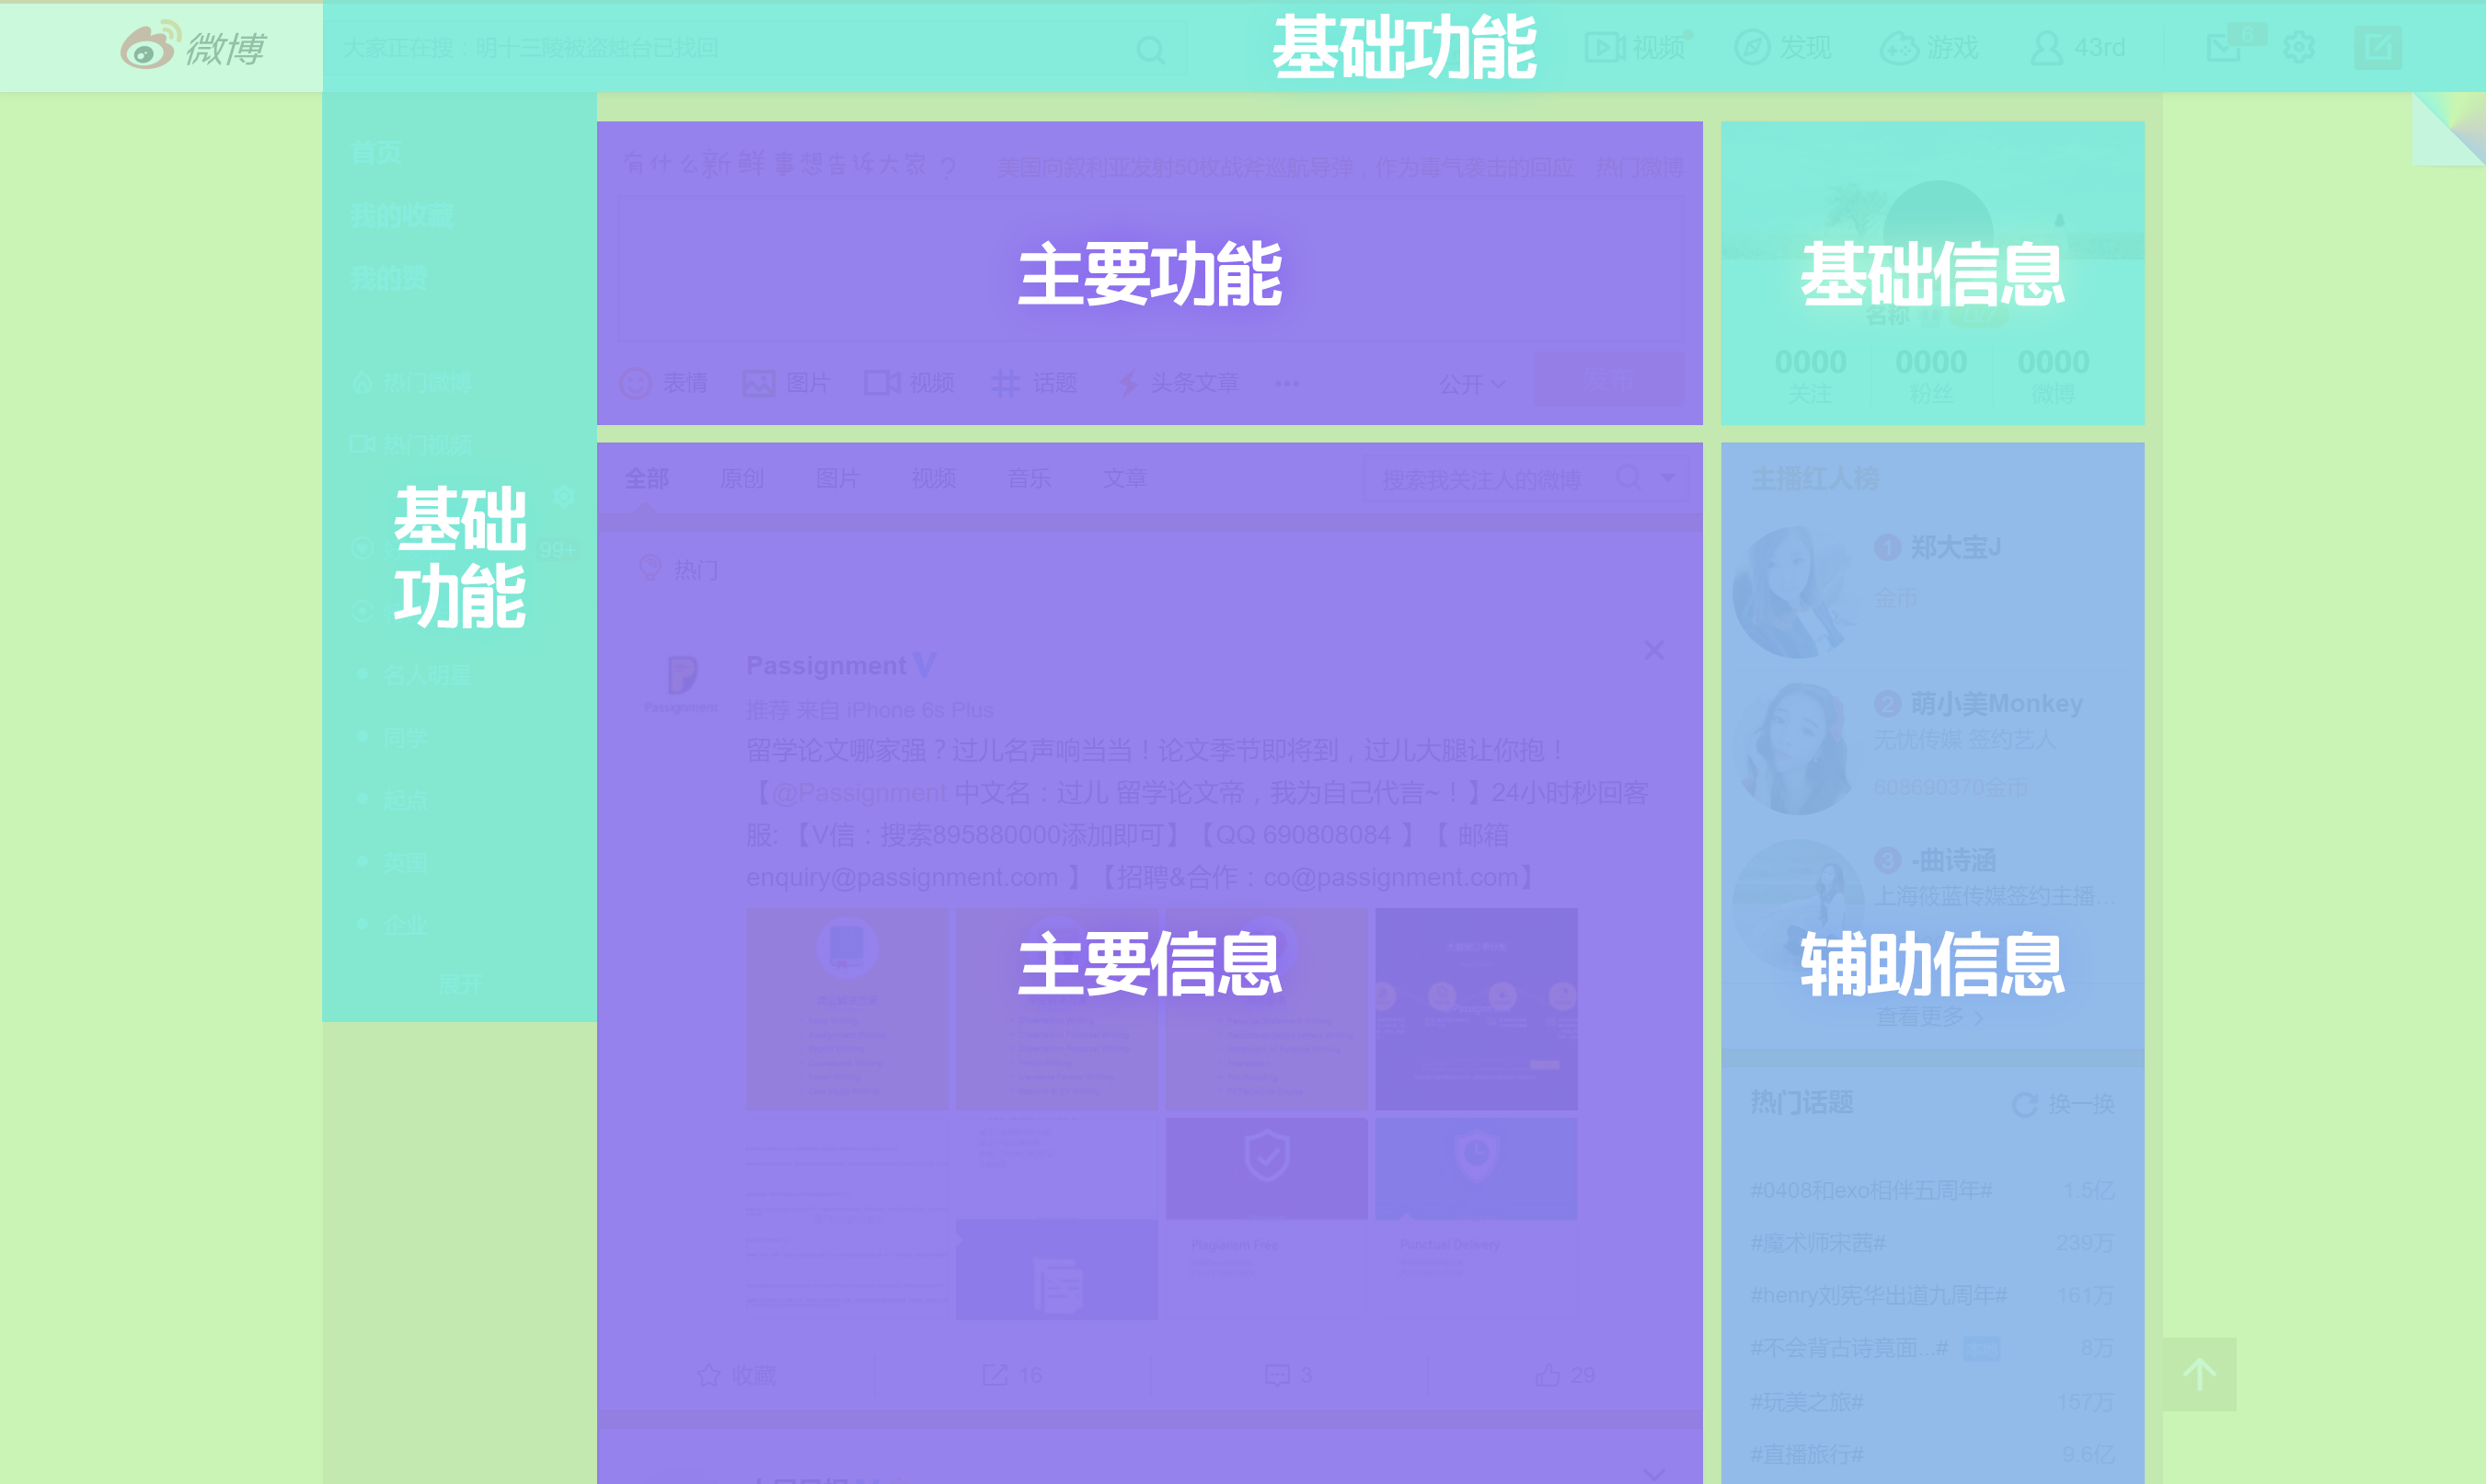 如何设计更懂用户的搜索页 - 蓝蓝设计_UI设计公司